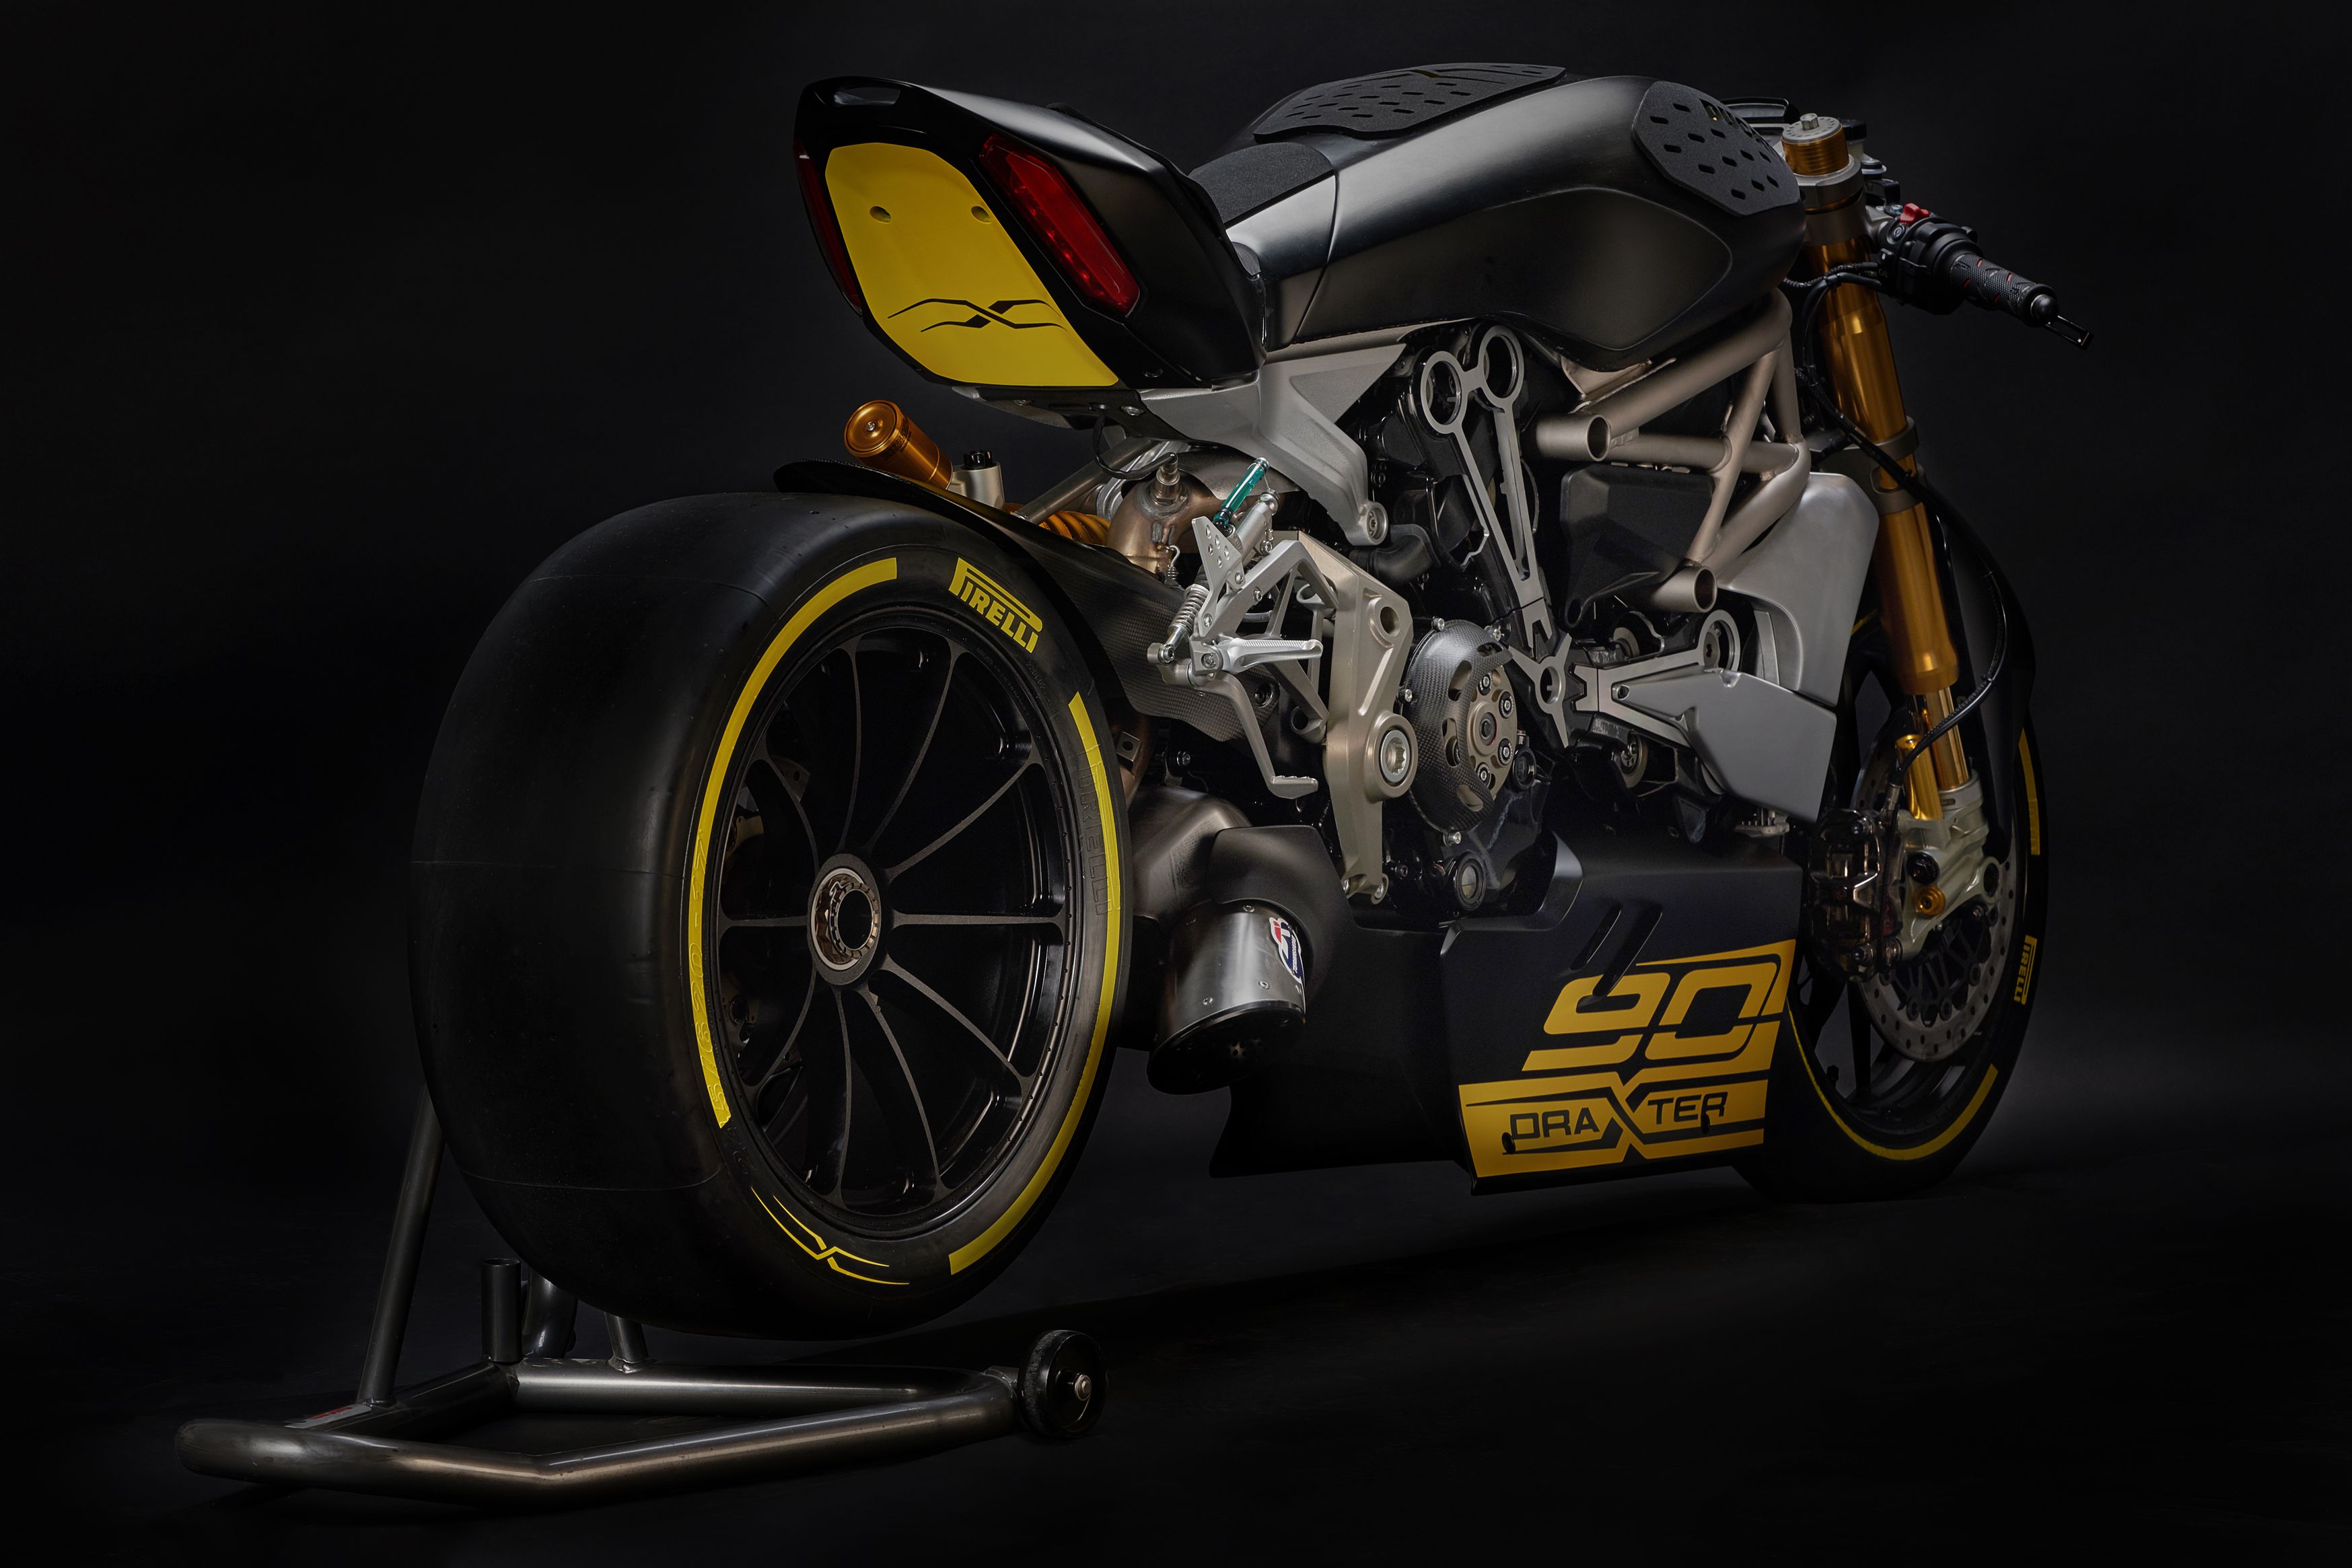 Ducati unveils draXter concept bike